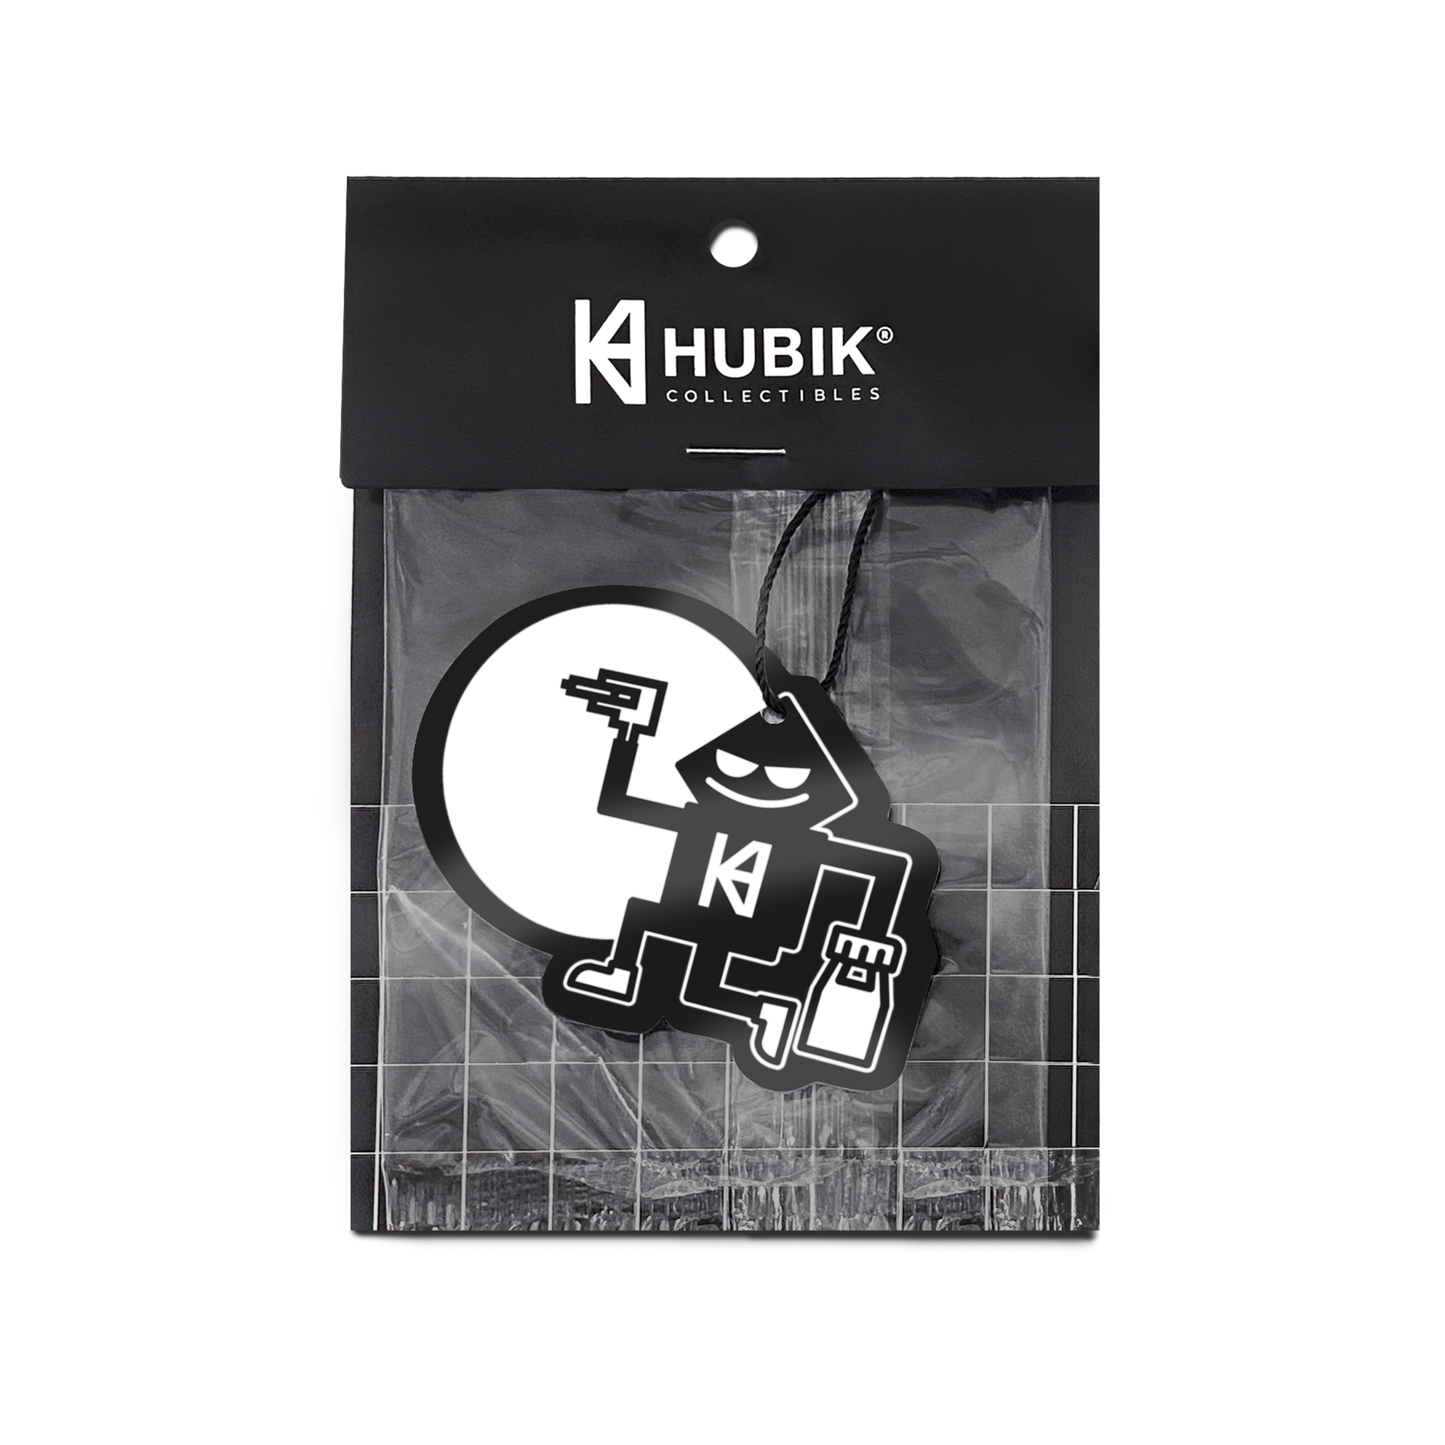 HUBIK® Car Air Freshener